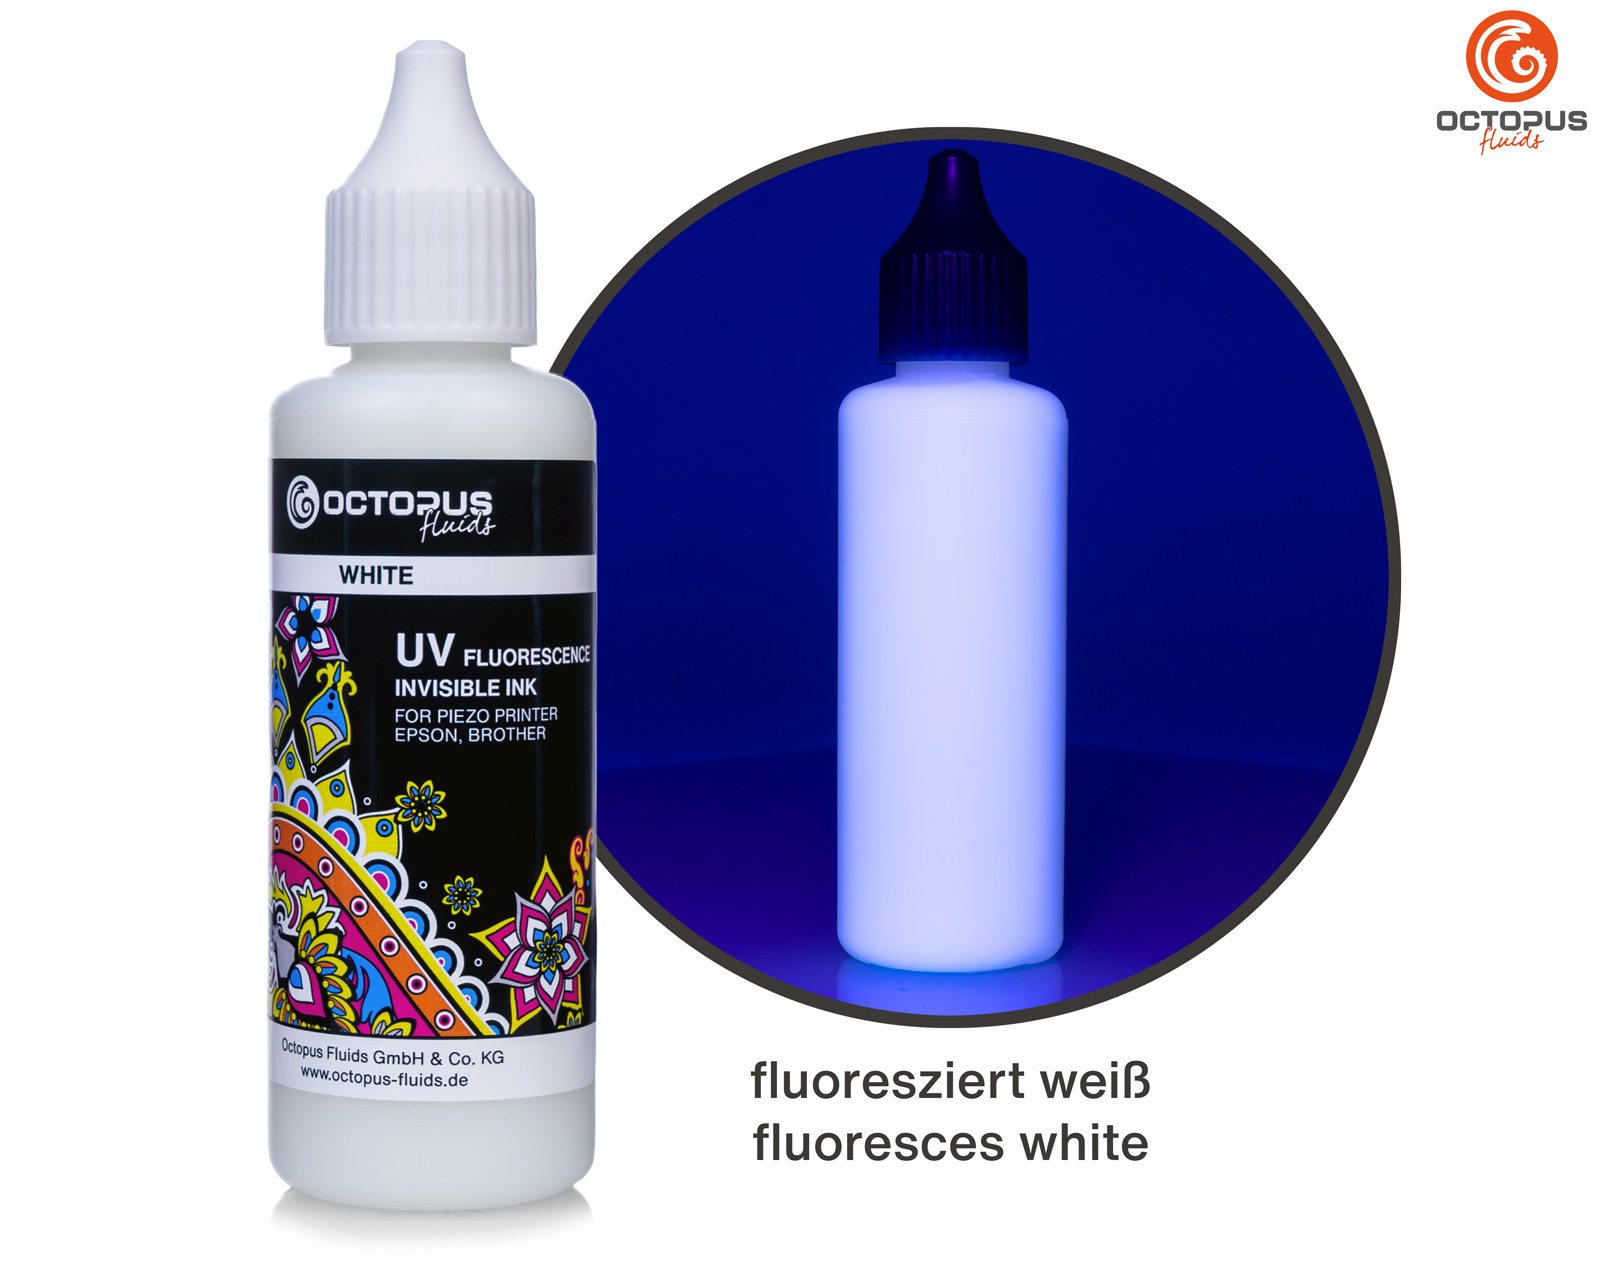 Inchiostro fluorescente UV invisibile per stampanti Piezo Epson e Brother, bianco